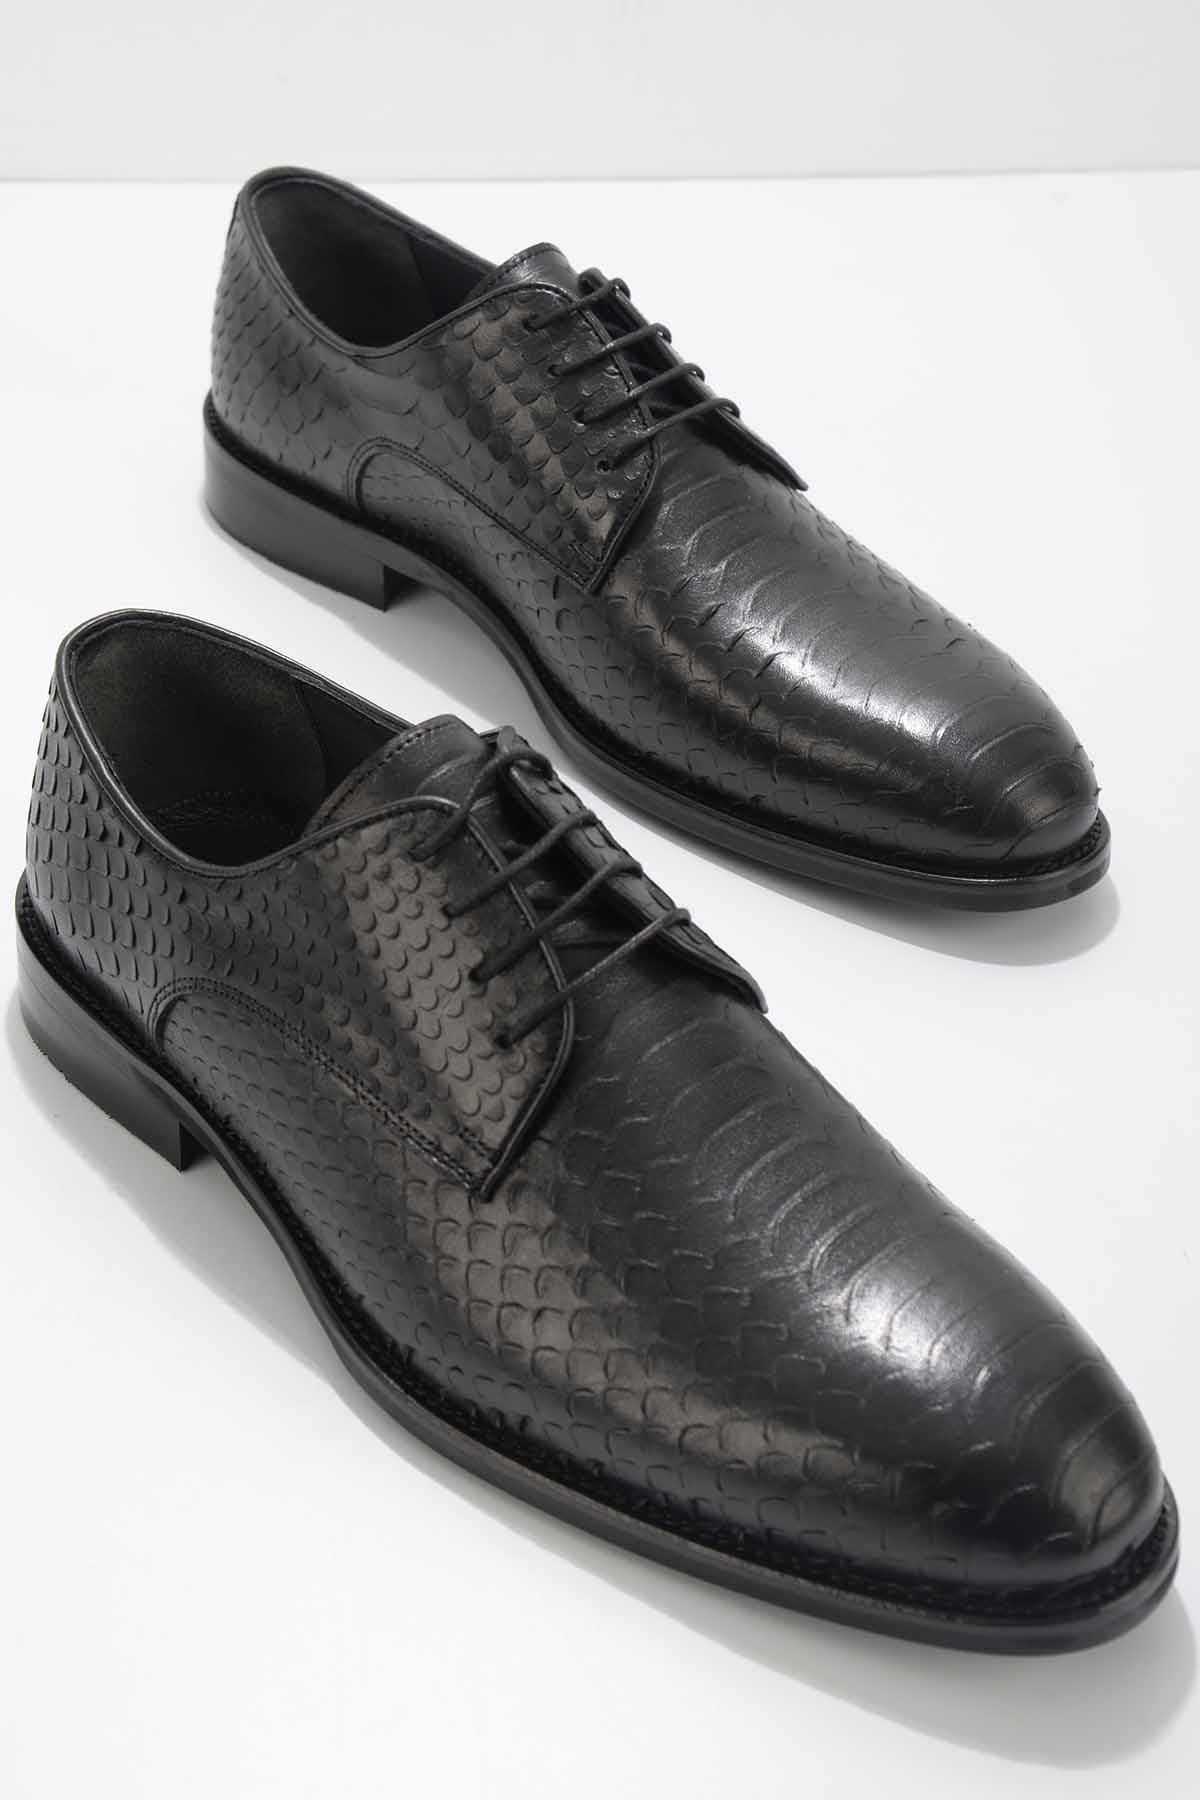 Siyah Yılan Hakiki Deri Erkek Klasik Ayakkabı E01755193607